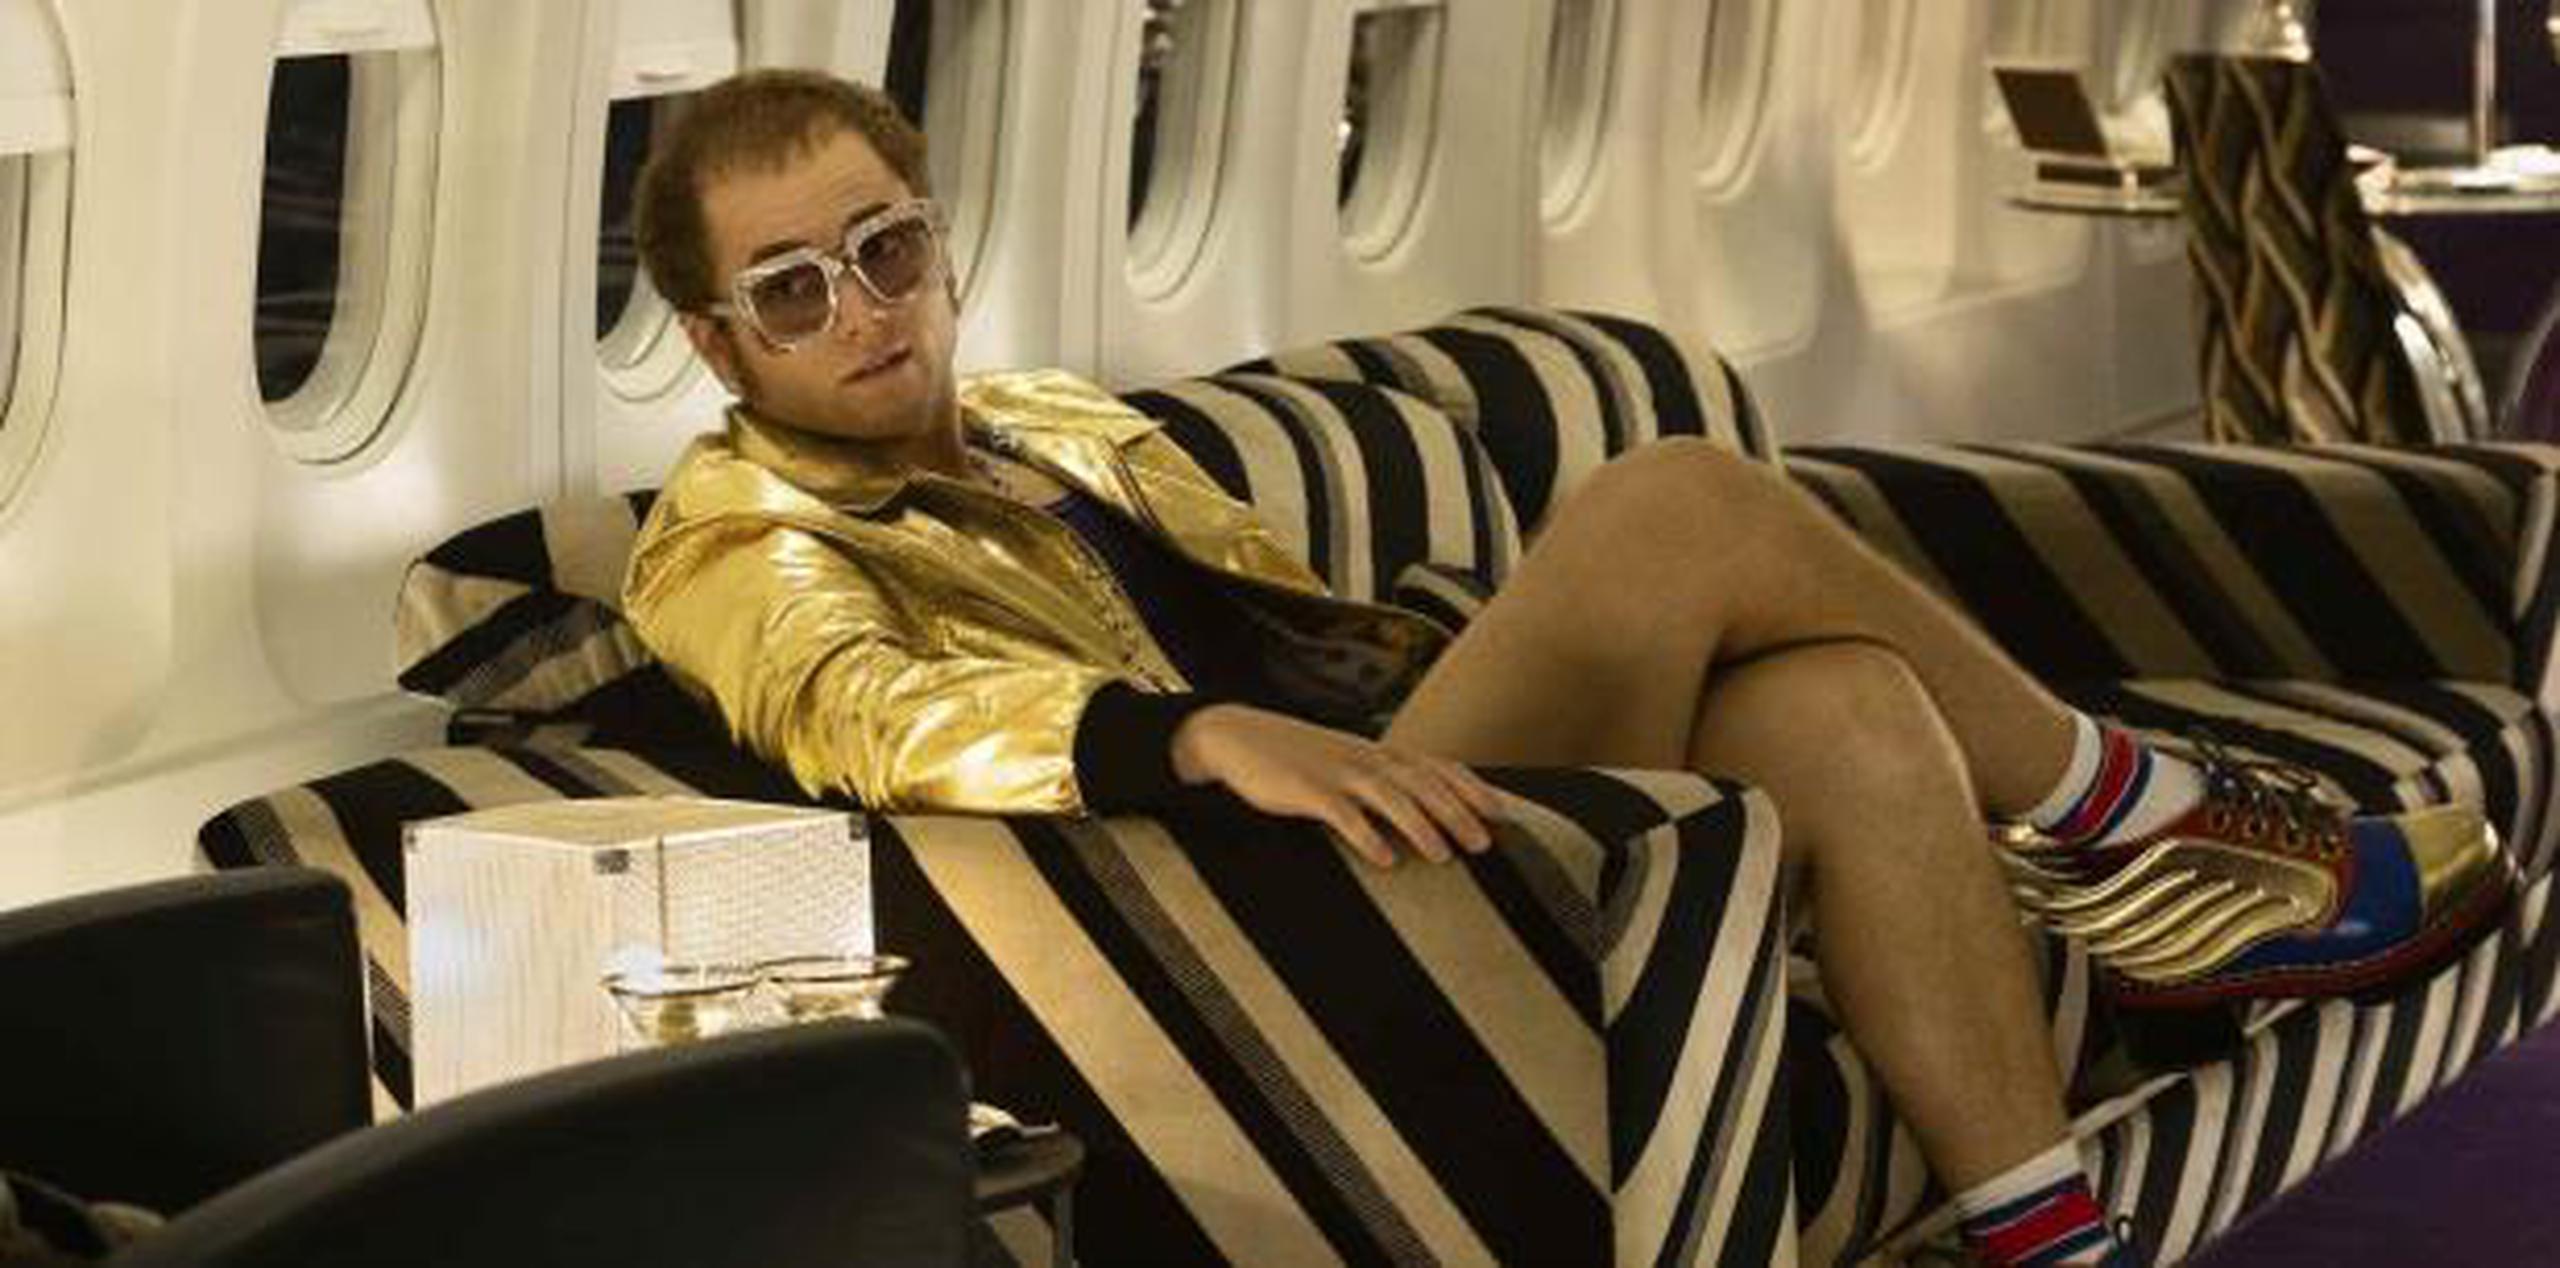 El actor inglés Taron Egerton interpreta a Elton John en la película "Rocketman". (AP)